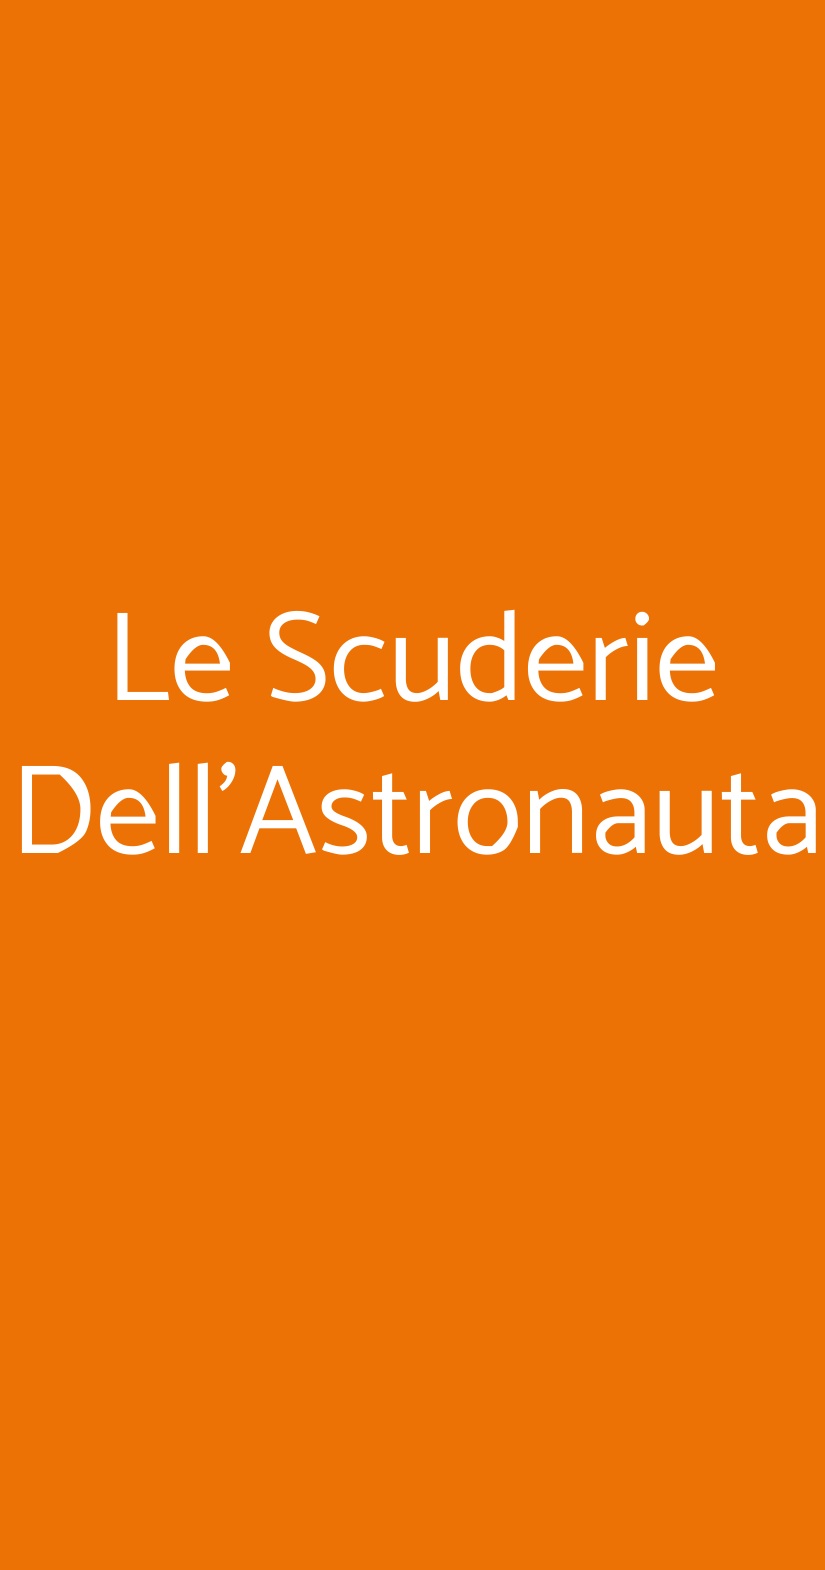 Le Scuderie Dell'Astronauta Genova menù 1 pagina